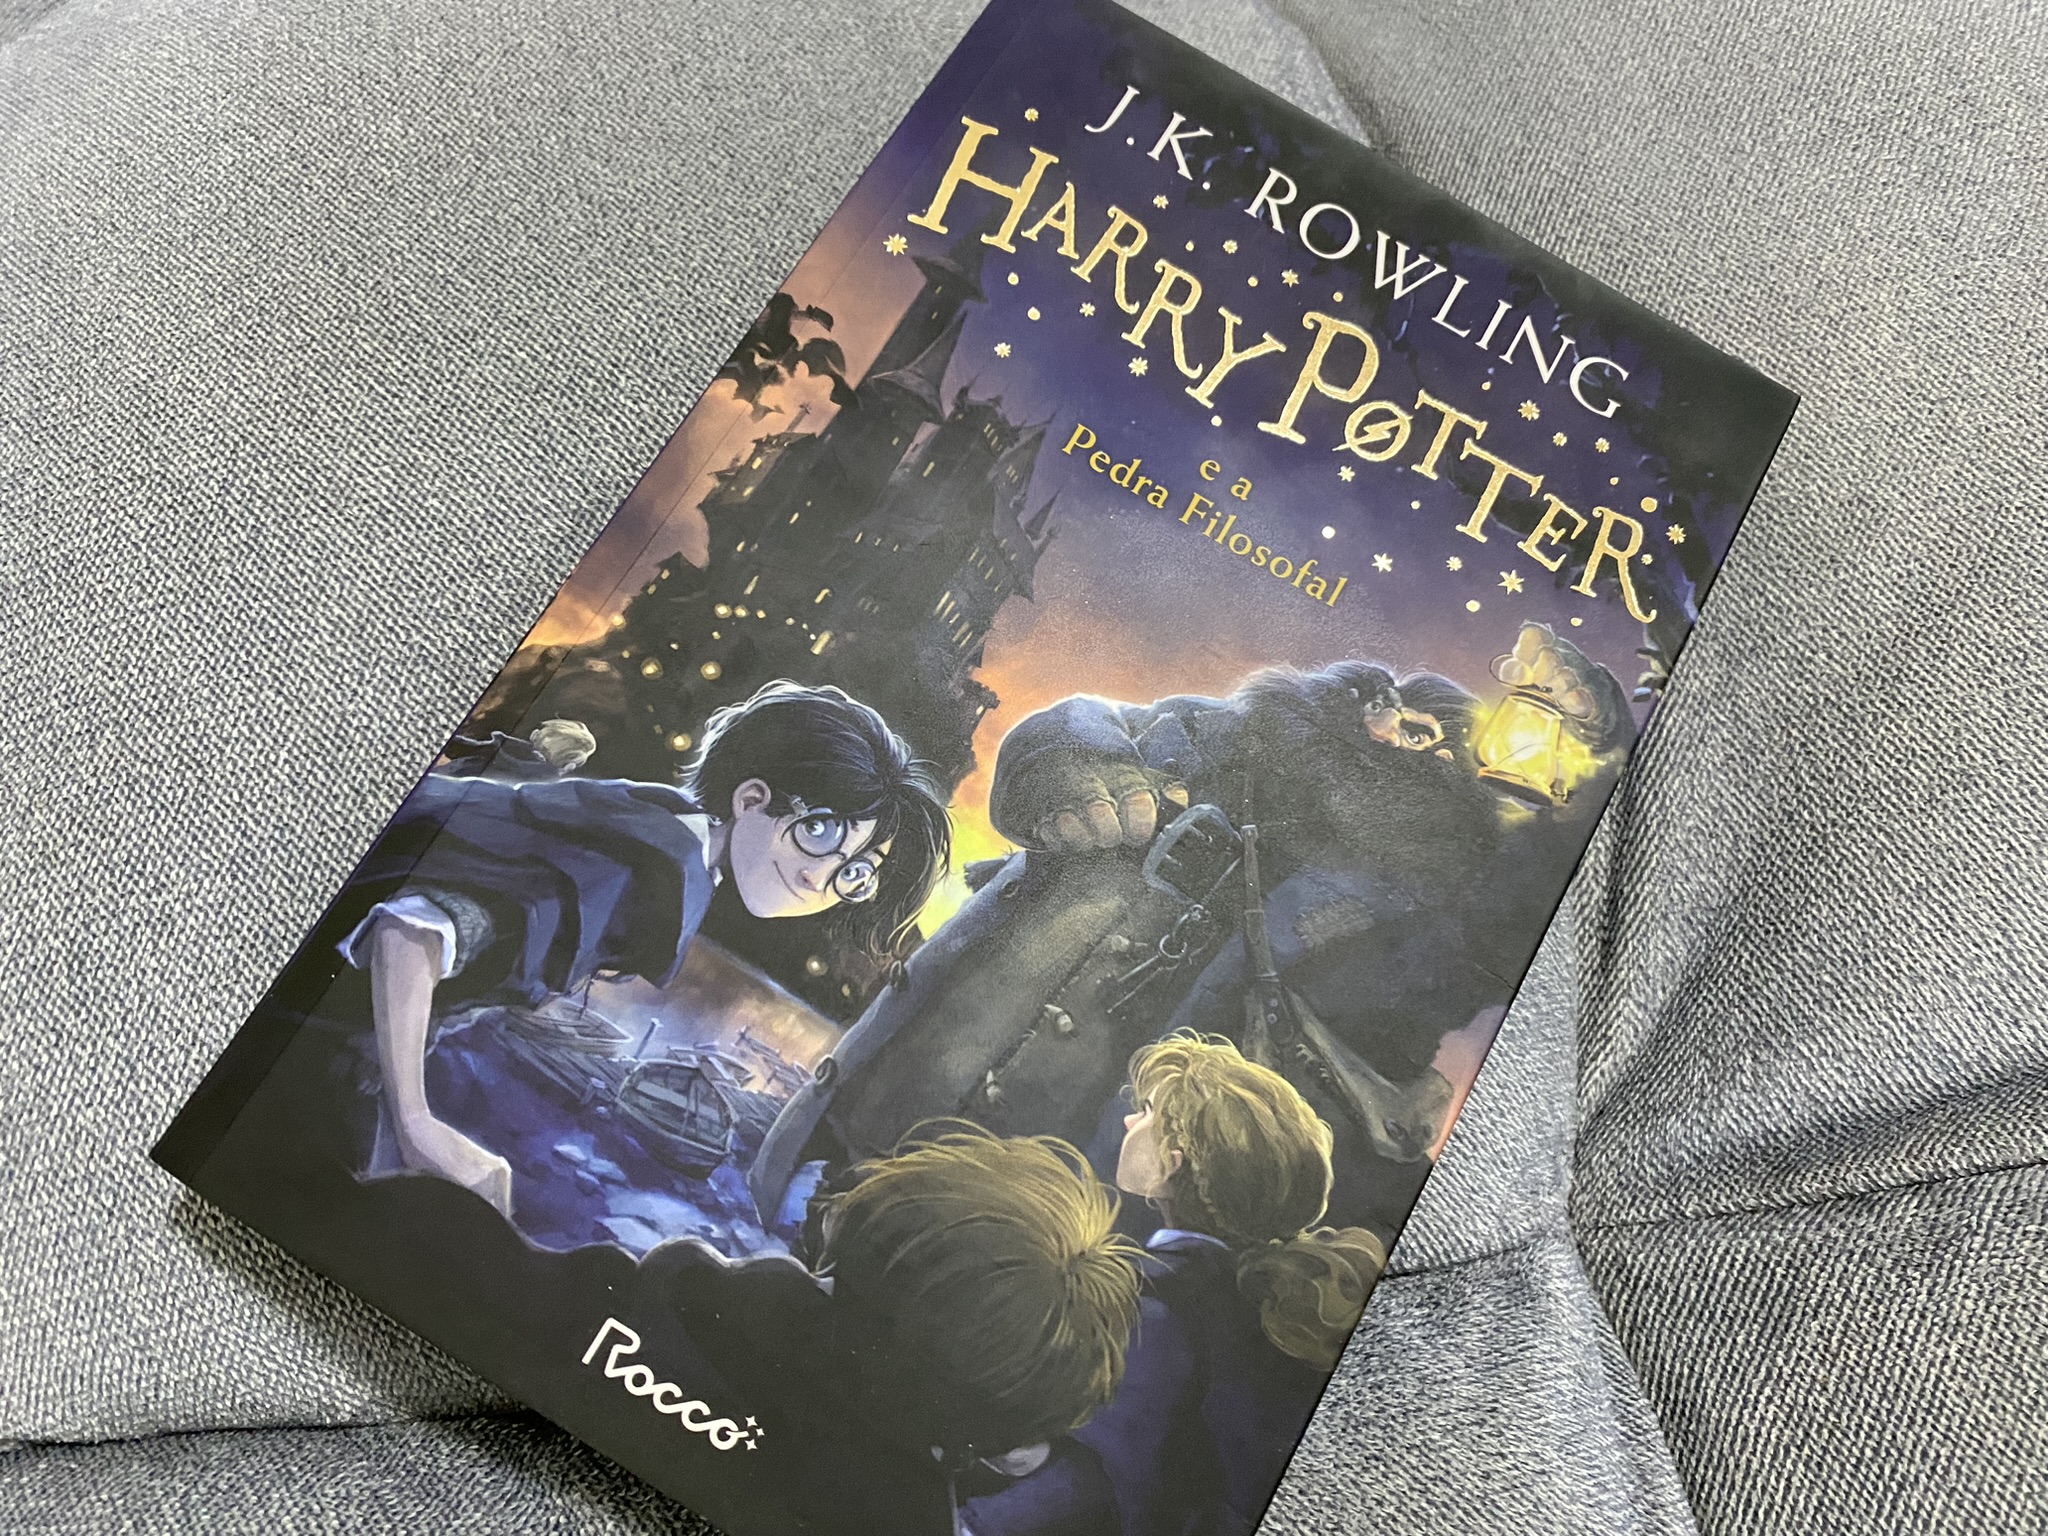 Harry Potter à l'école des sorciers - Un jeune garçon dans un monde courageux